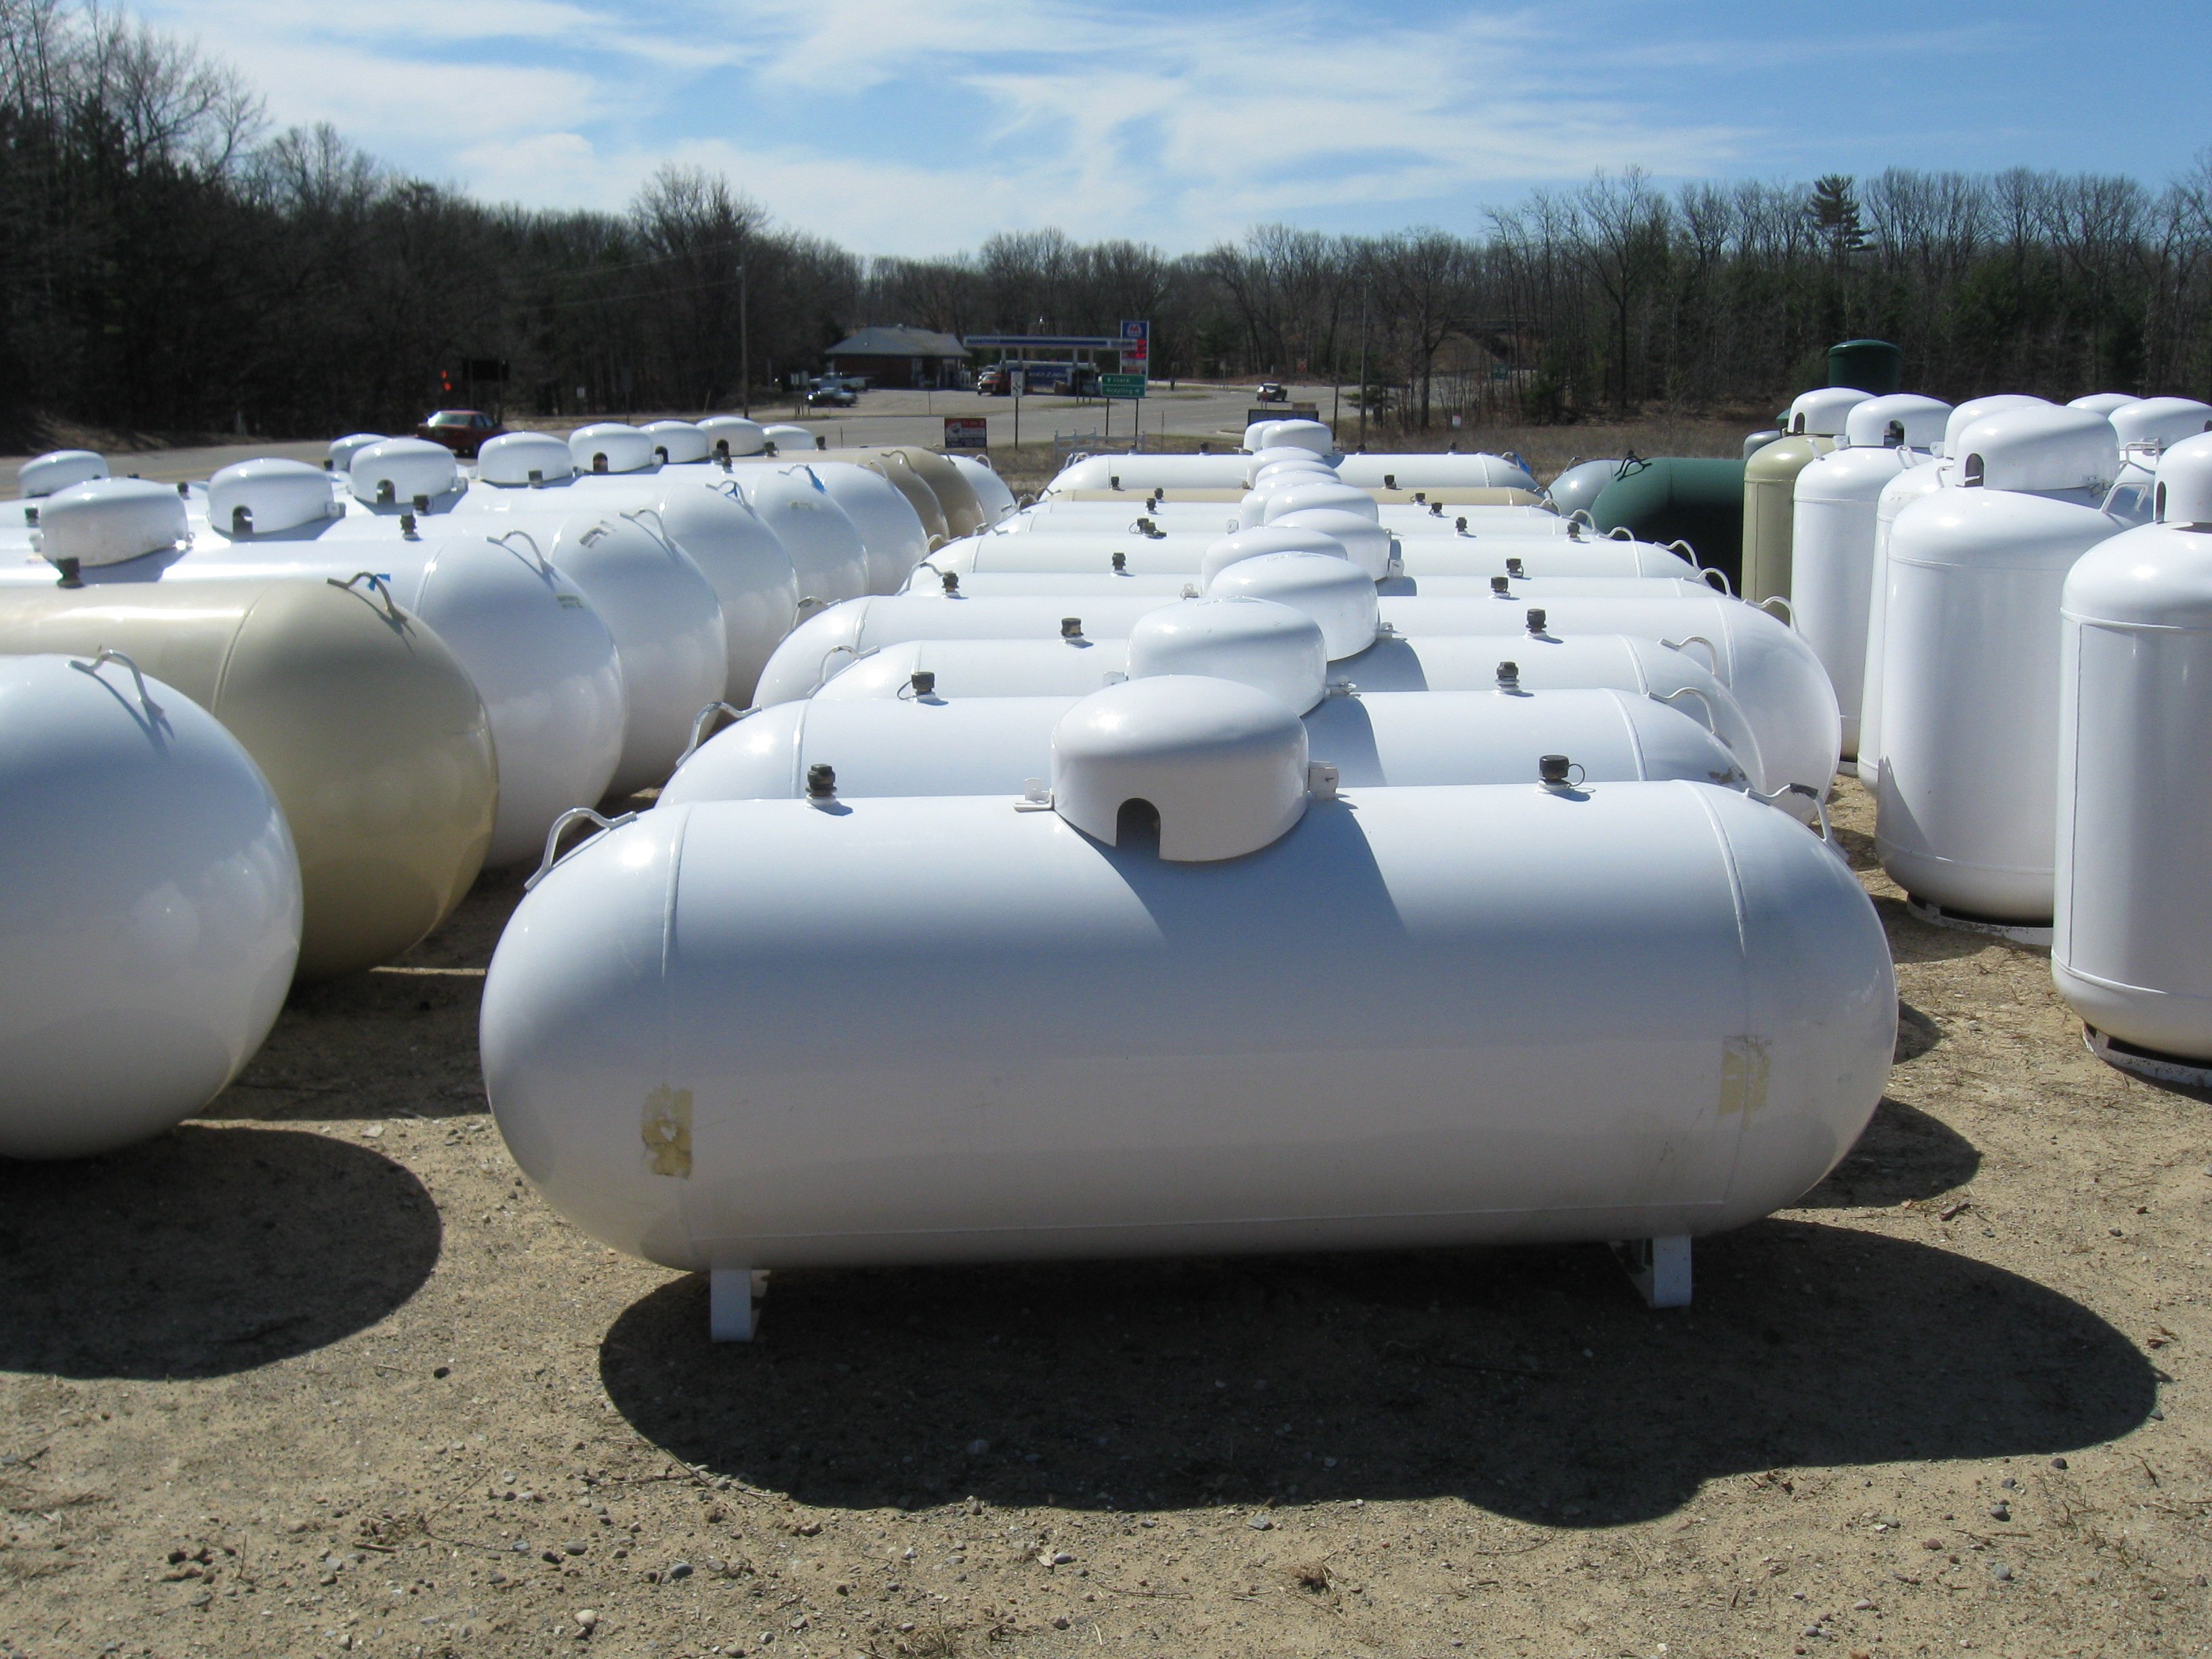 Illinois tries to ease pain of propane shortage